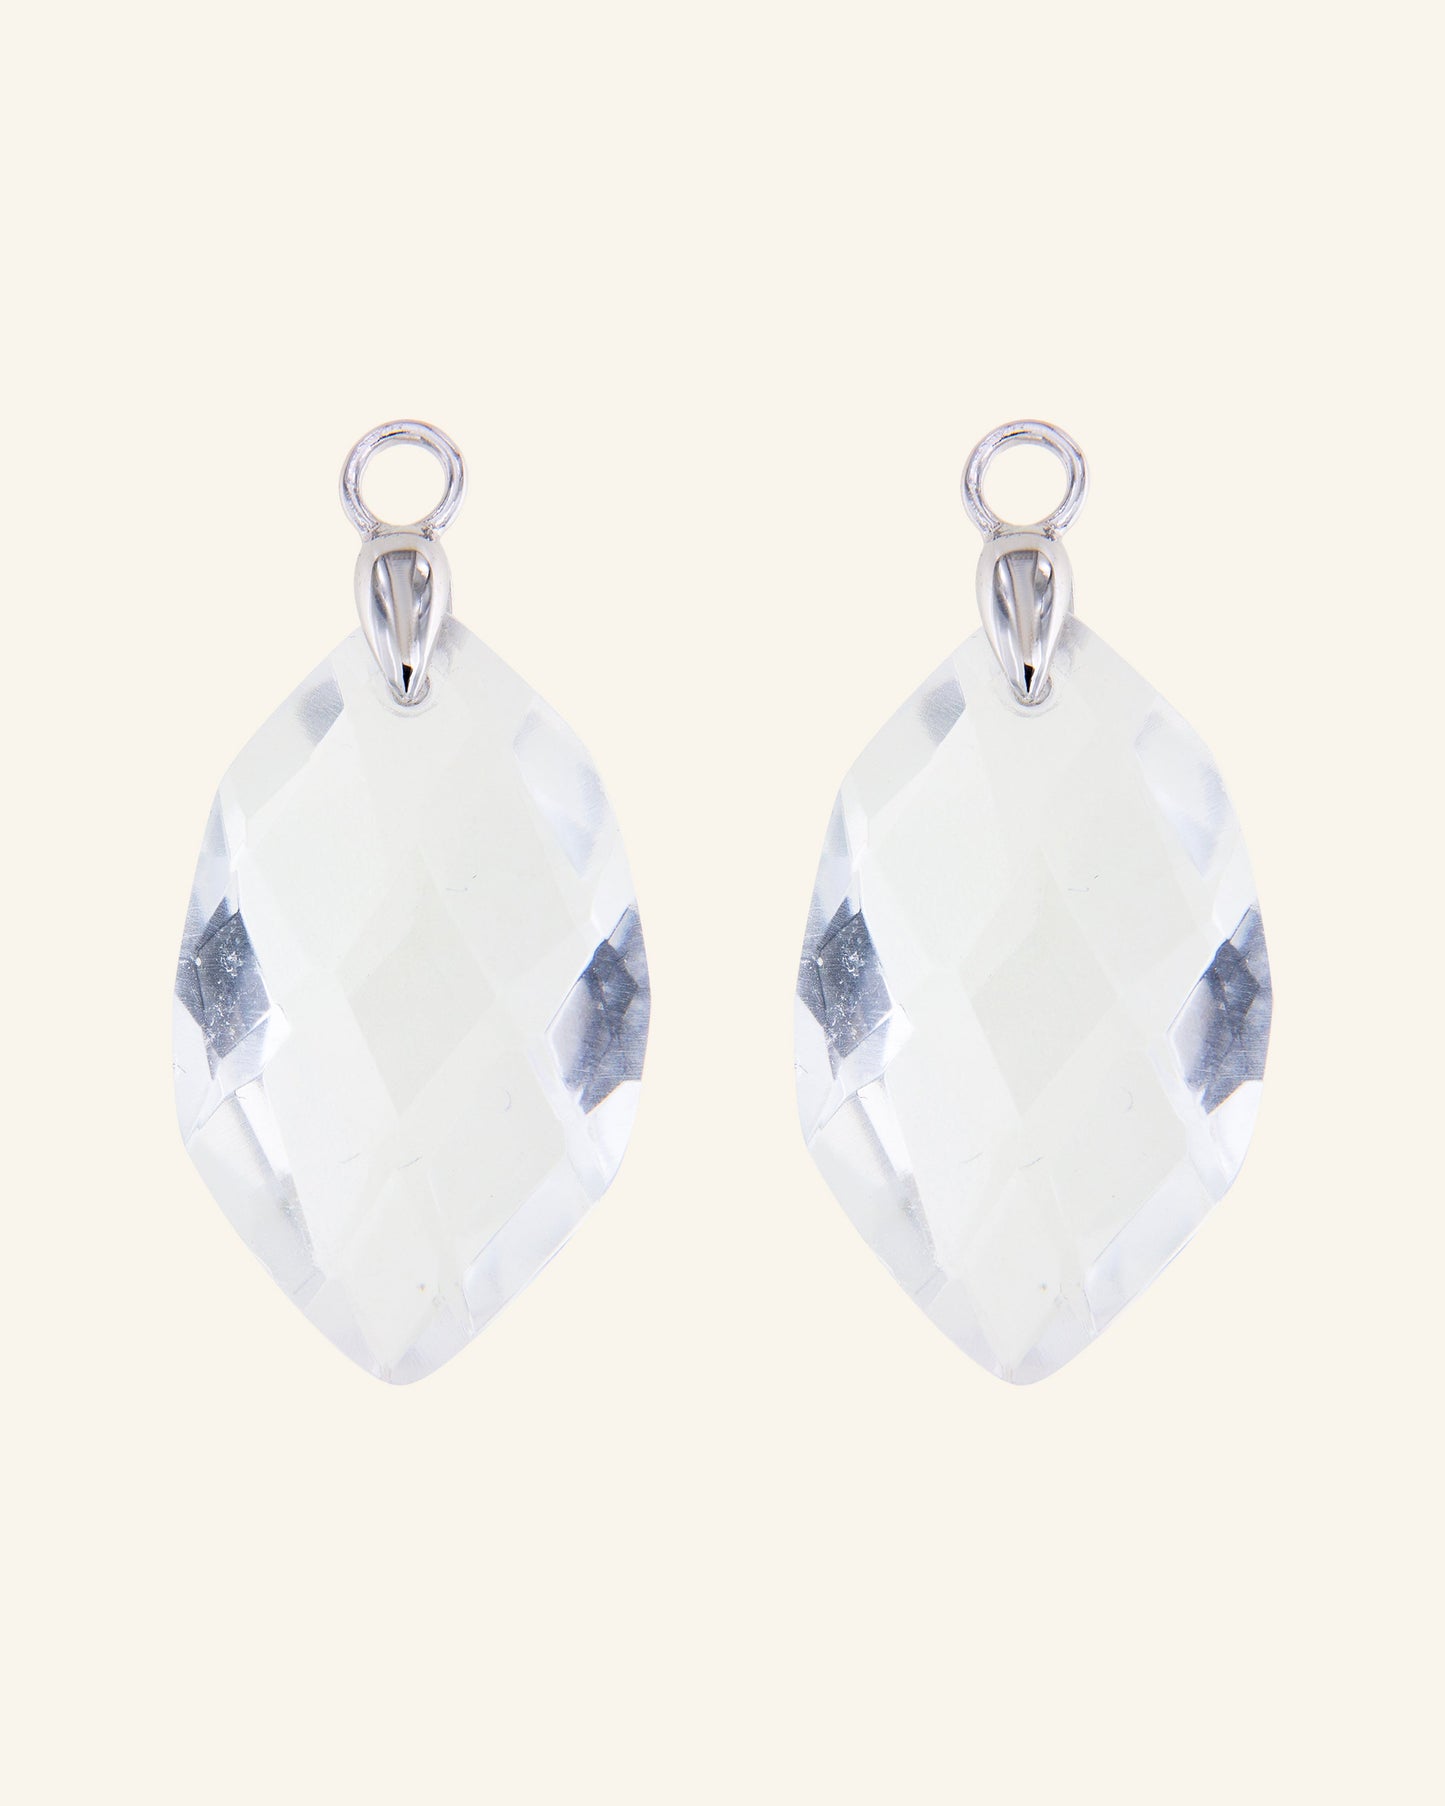 Glacier pendants with colorless quartz